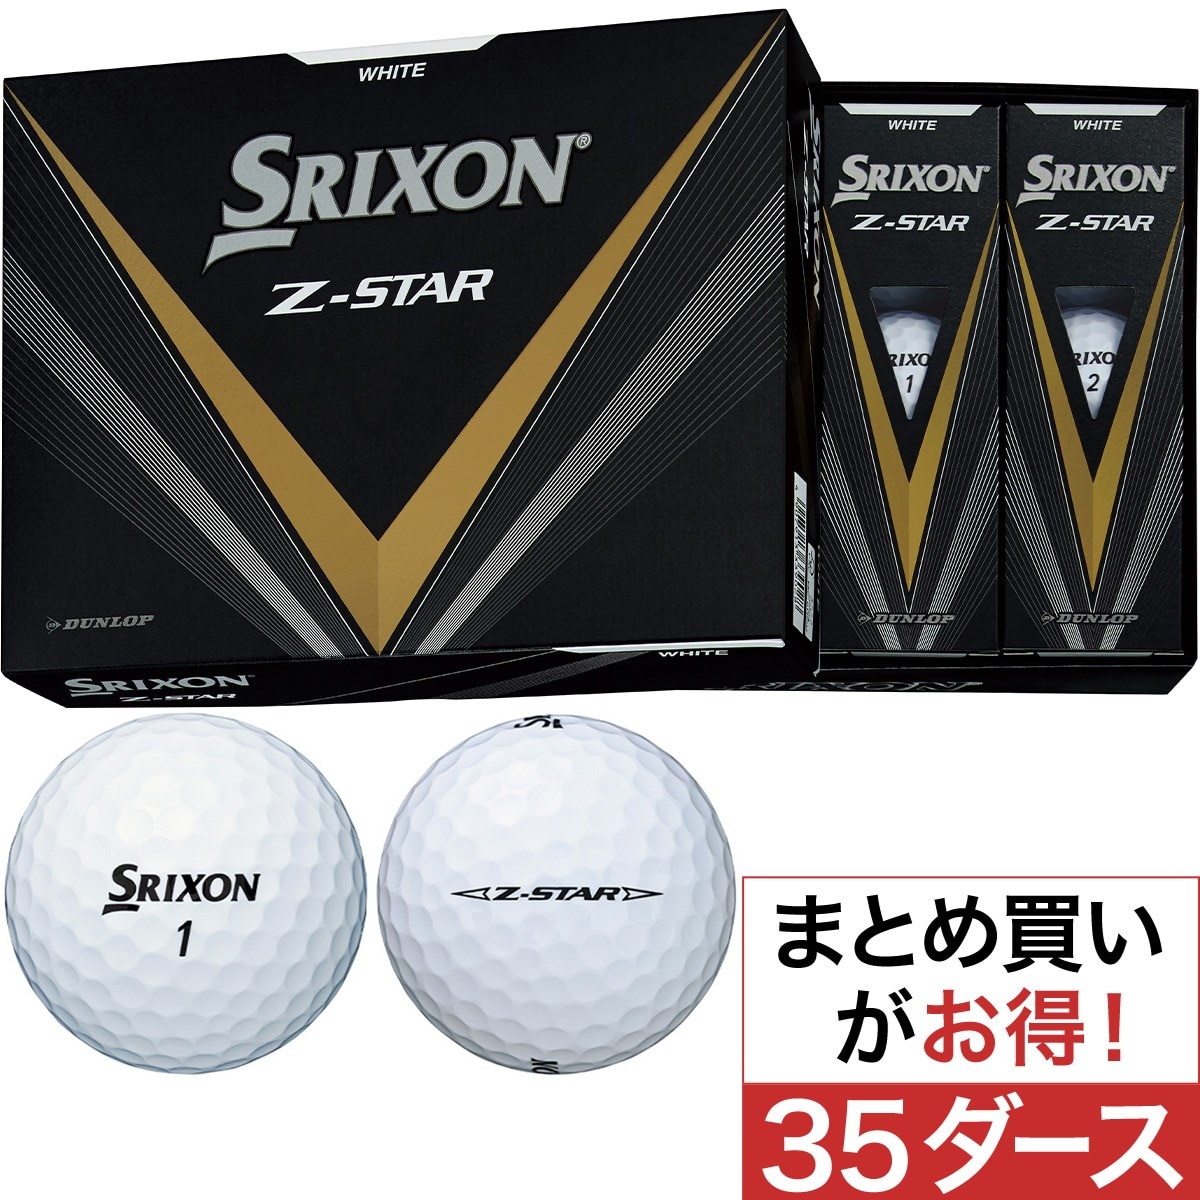 Z-STAR8 ボール 35ダースセット(ゴルフボール)